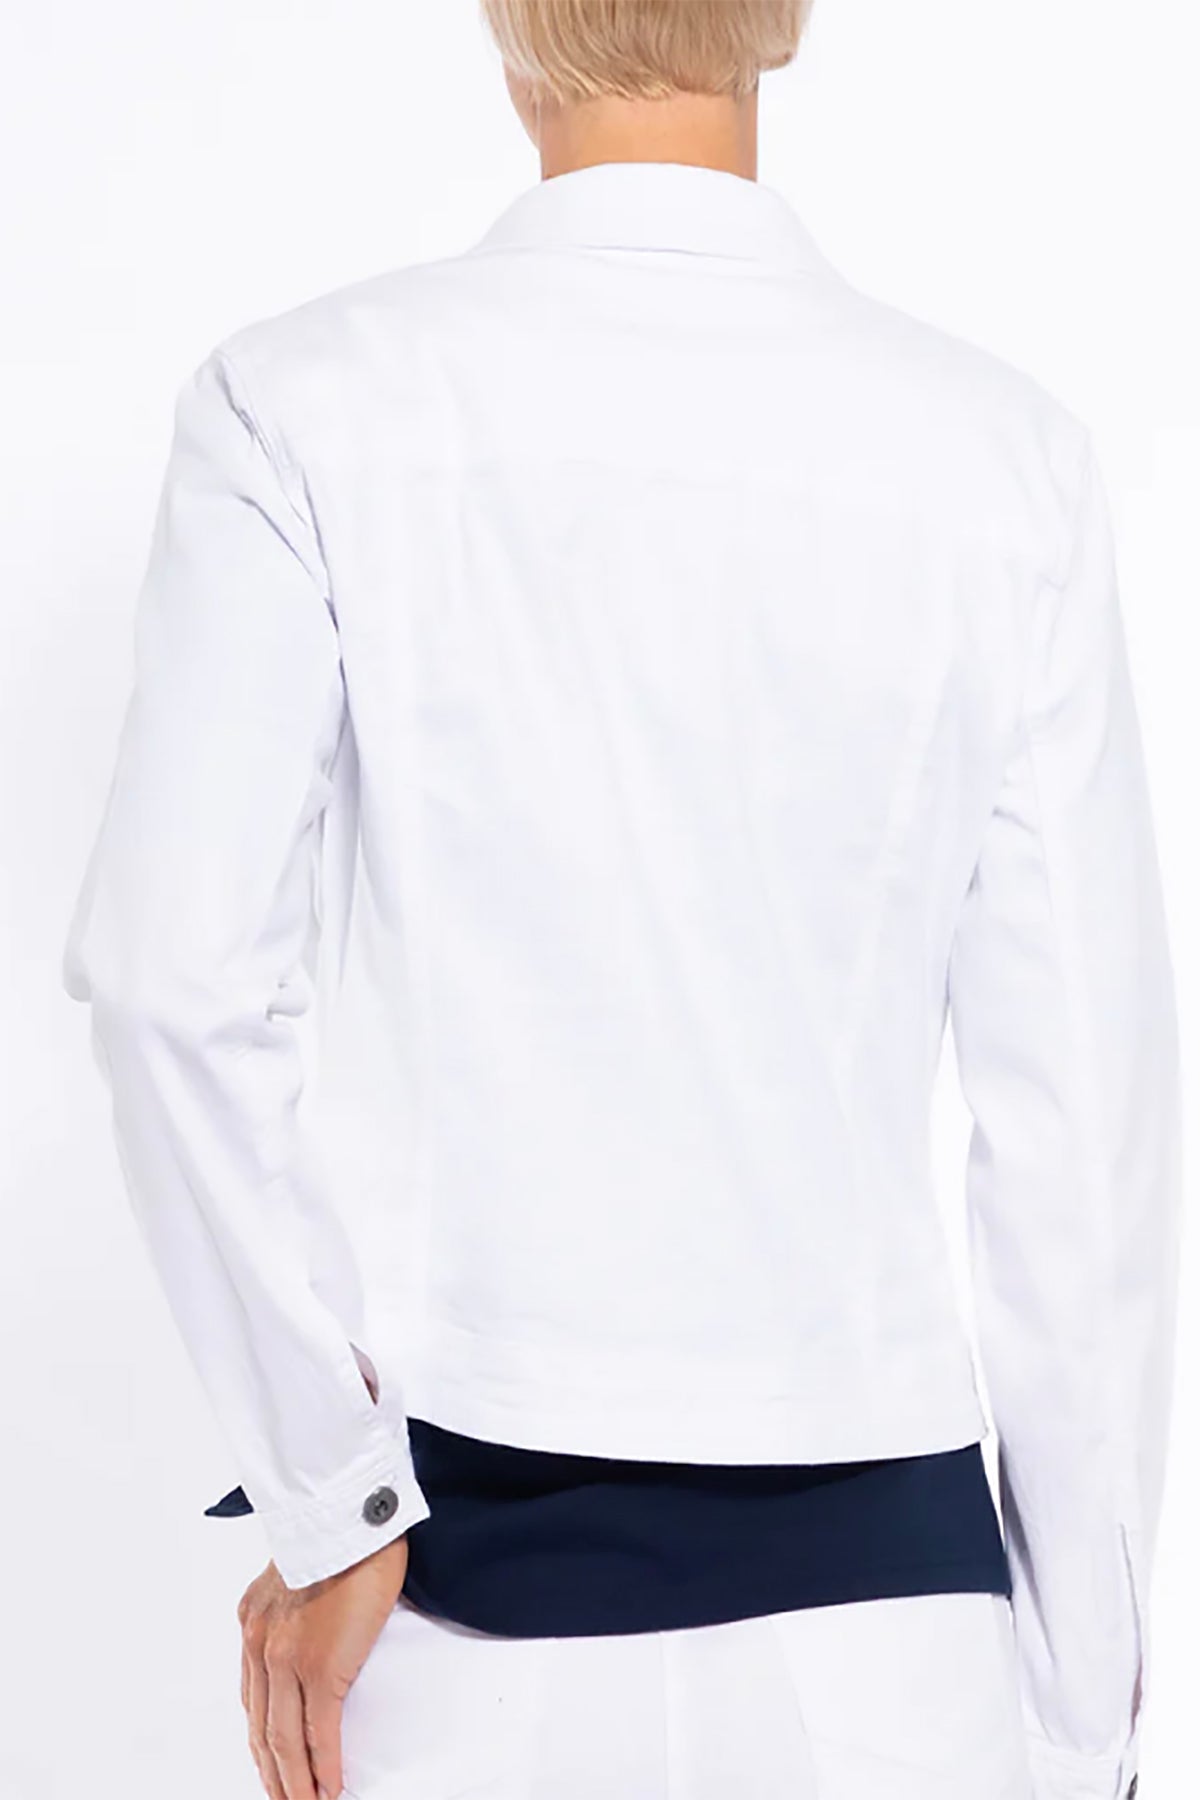 Zara White Denim Jacket Size Medium | eBay